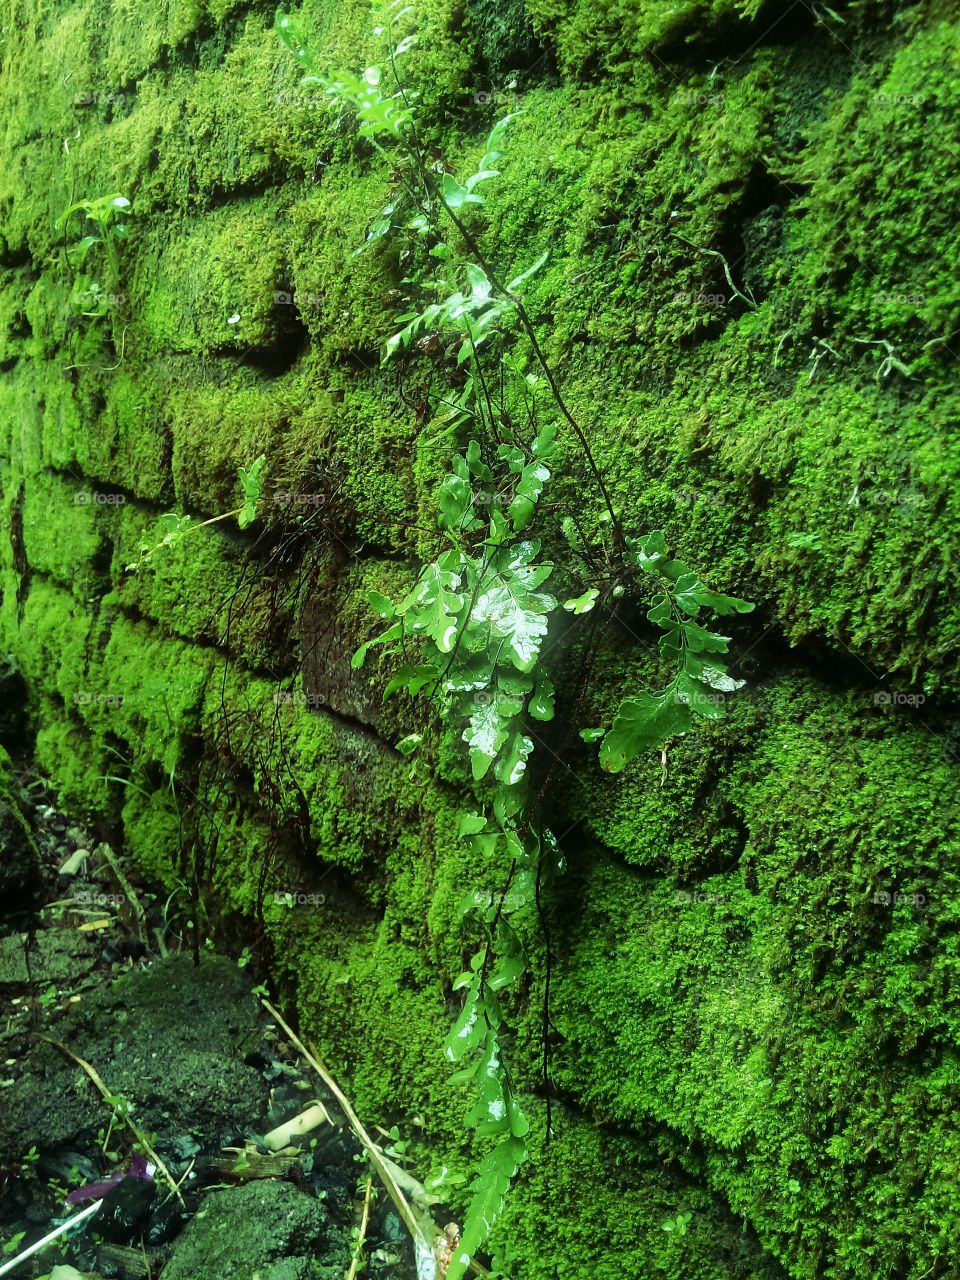 mossy walls and nail plants